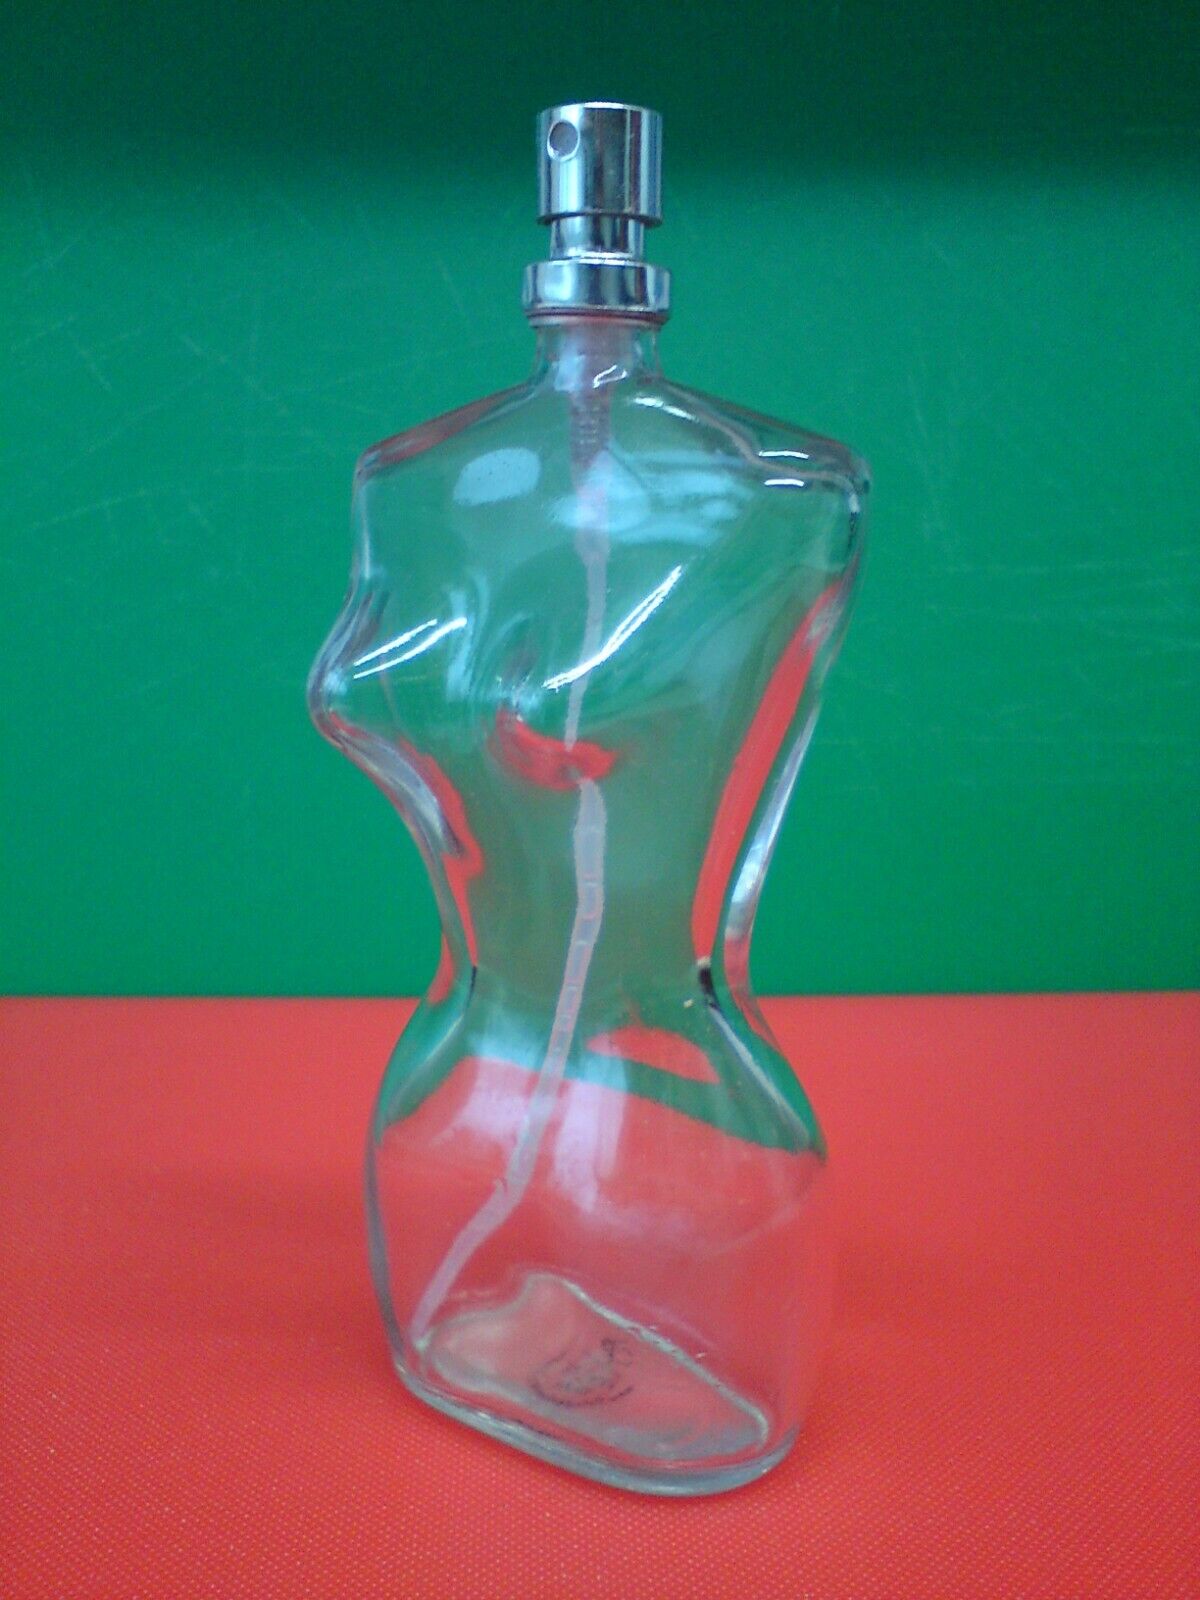 USED Empty Glass Perfume Bottle Woman Body Shape Gaultier alike art project 